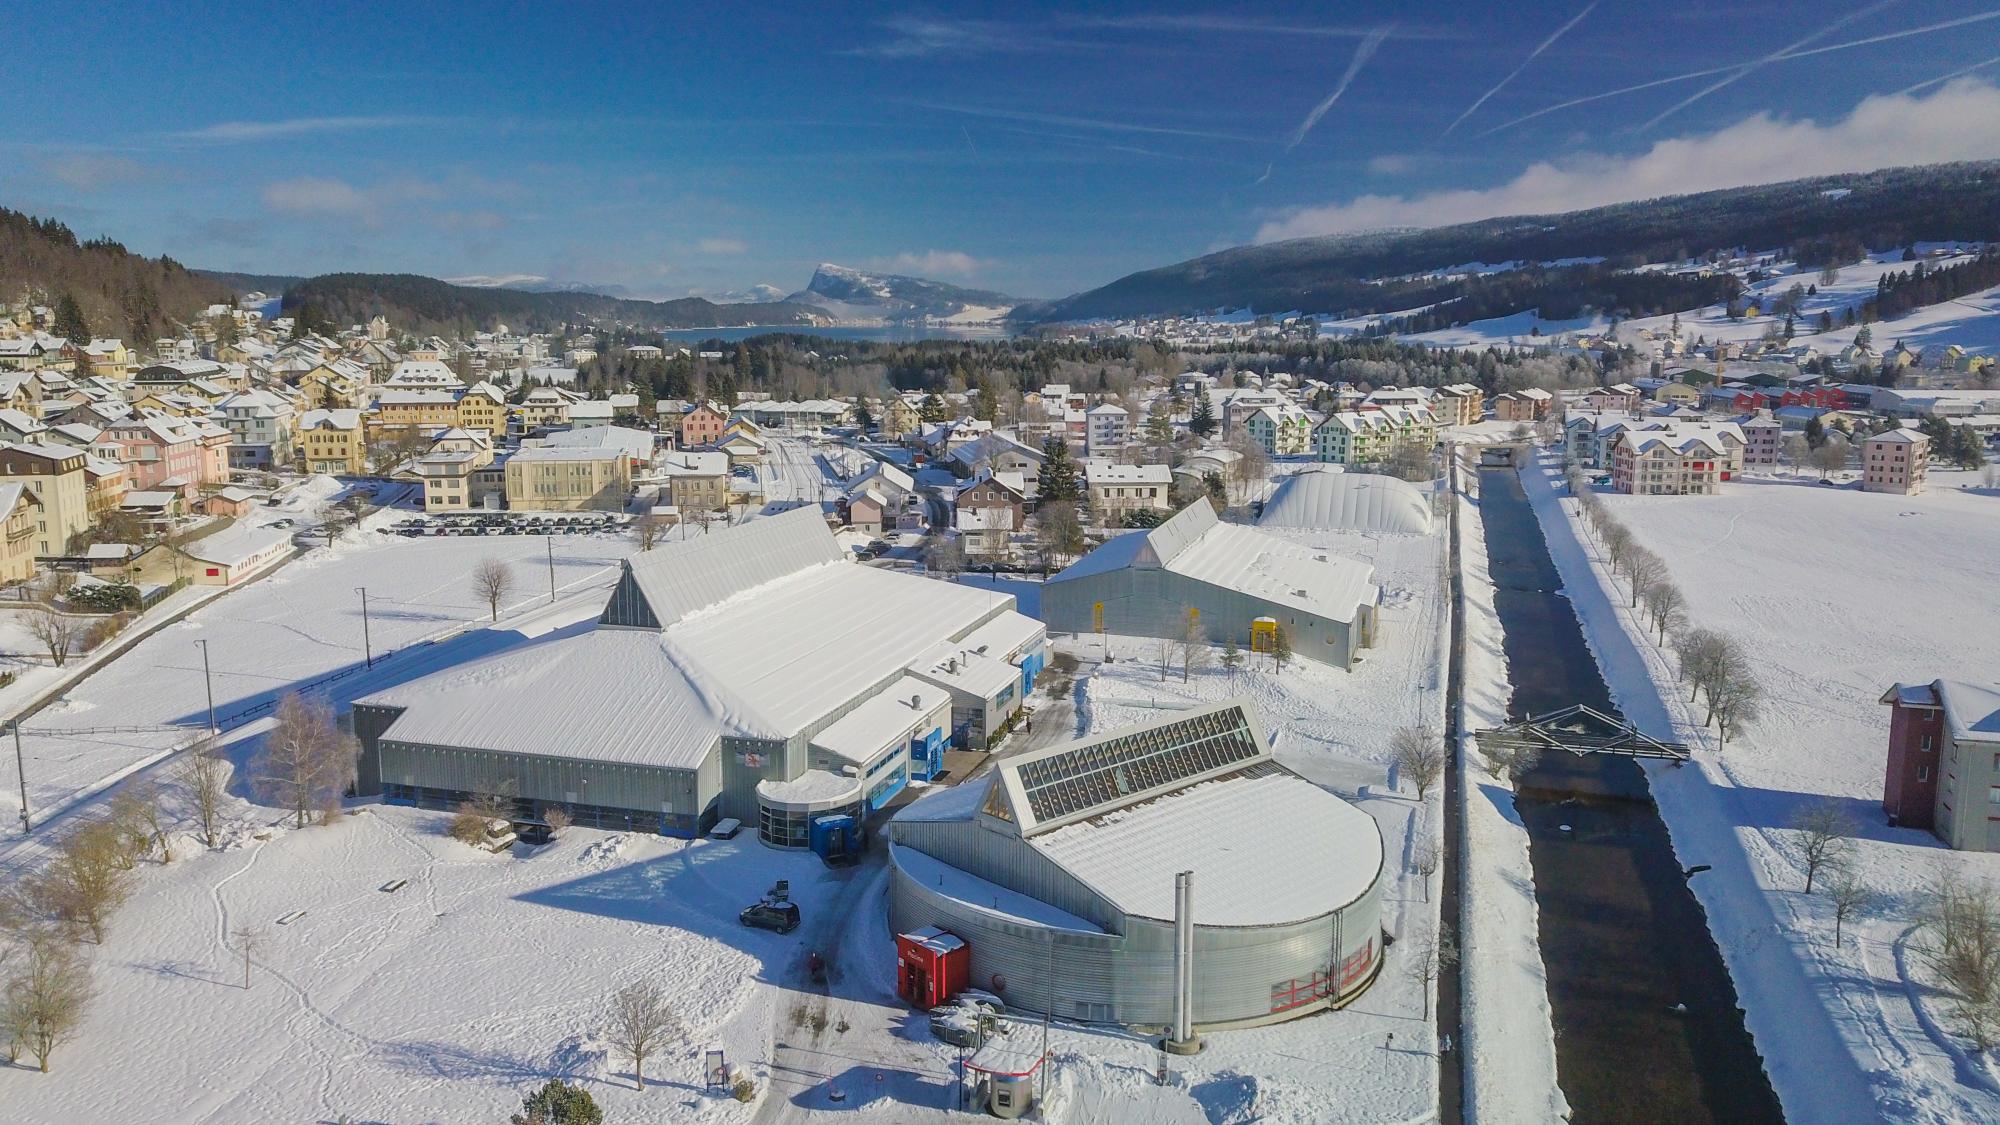 Vallée de Joux Sports Centre in winter